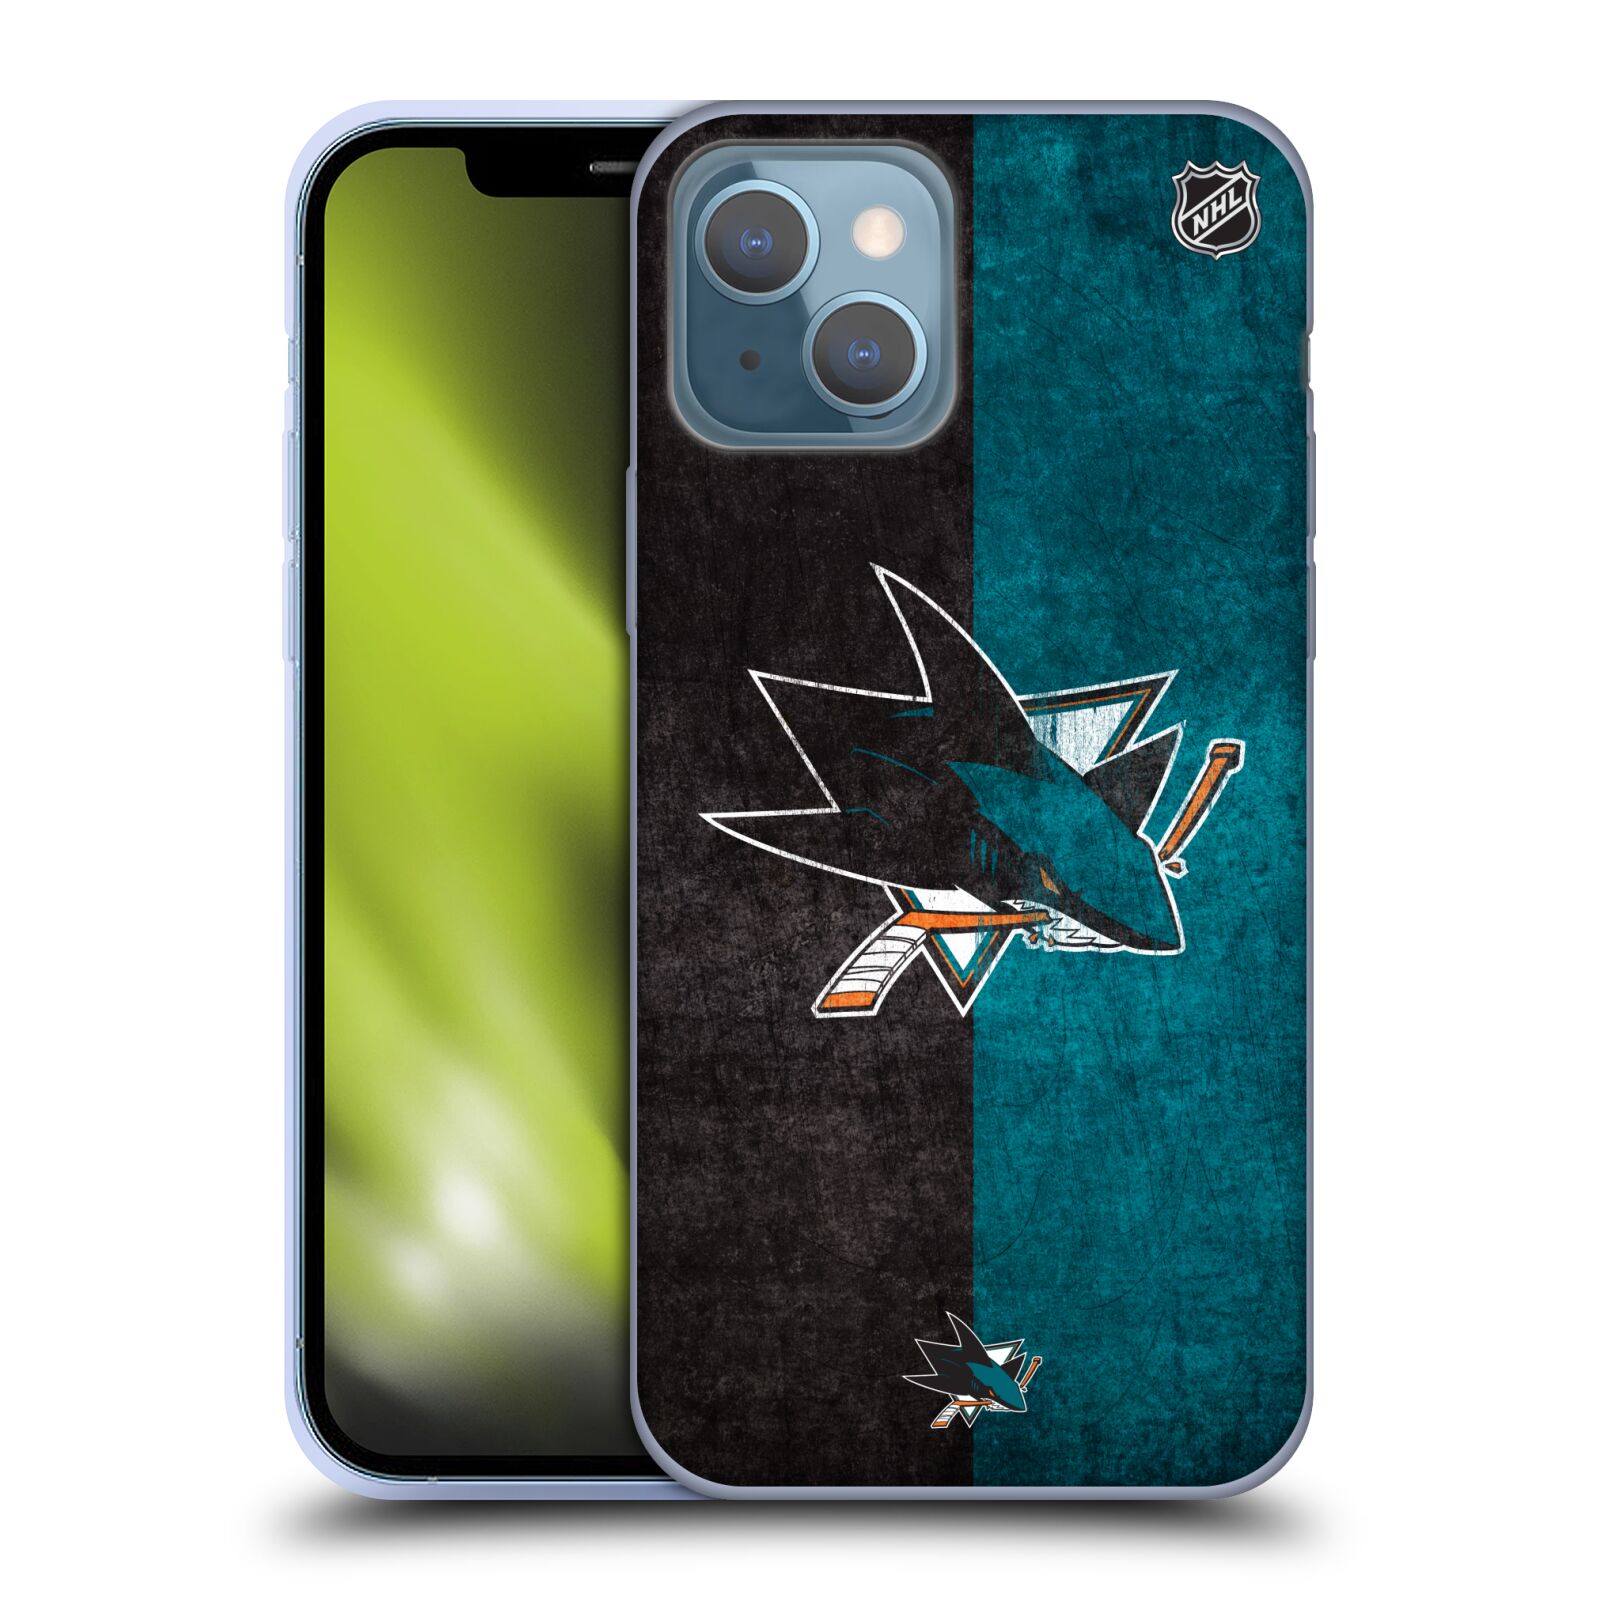 Silikonové pouzdro na mobil Apple iPhone 13 - NHL - Půlené logo San Jose Sharks (Silikonový kryt, obal, pouzdro na mobilní telefon Apple iPhone 13 s licencovaným motivem NHL - Půlené logo San Jose Sharks)